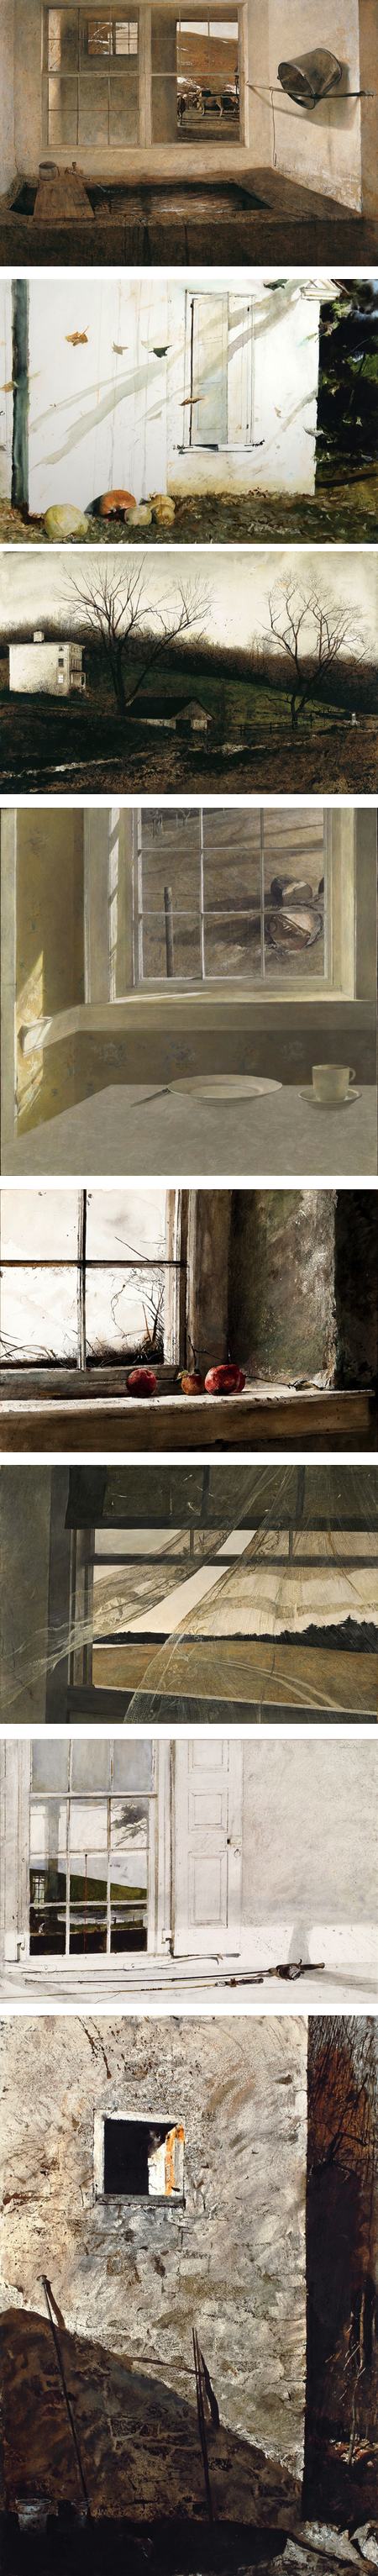 Andrew Wyeth's windows